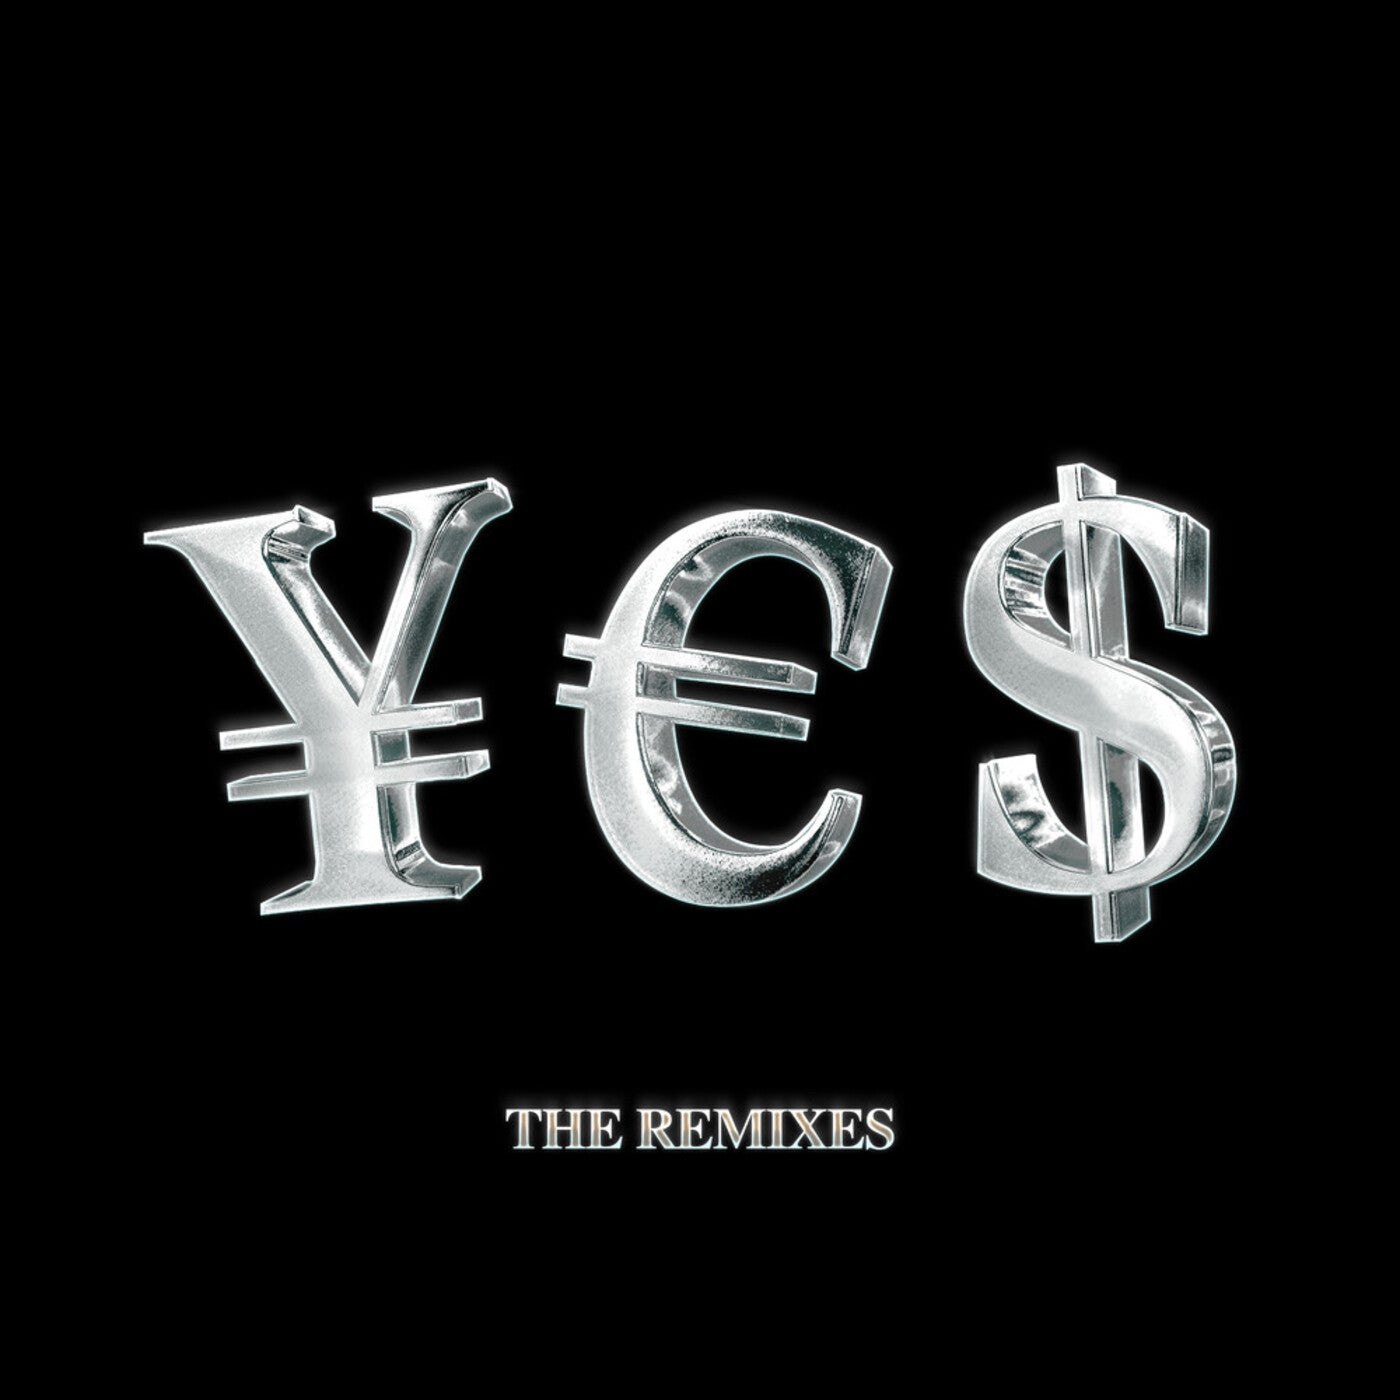 ¥€$ (The Remixes)